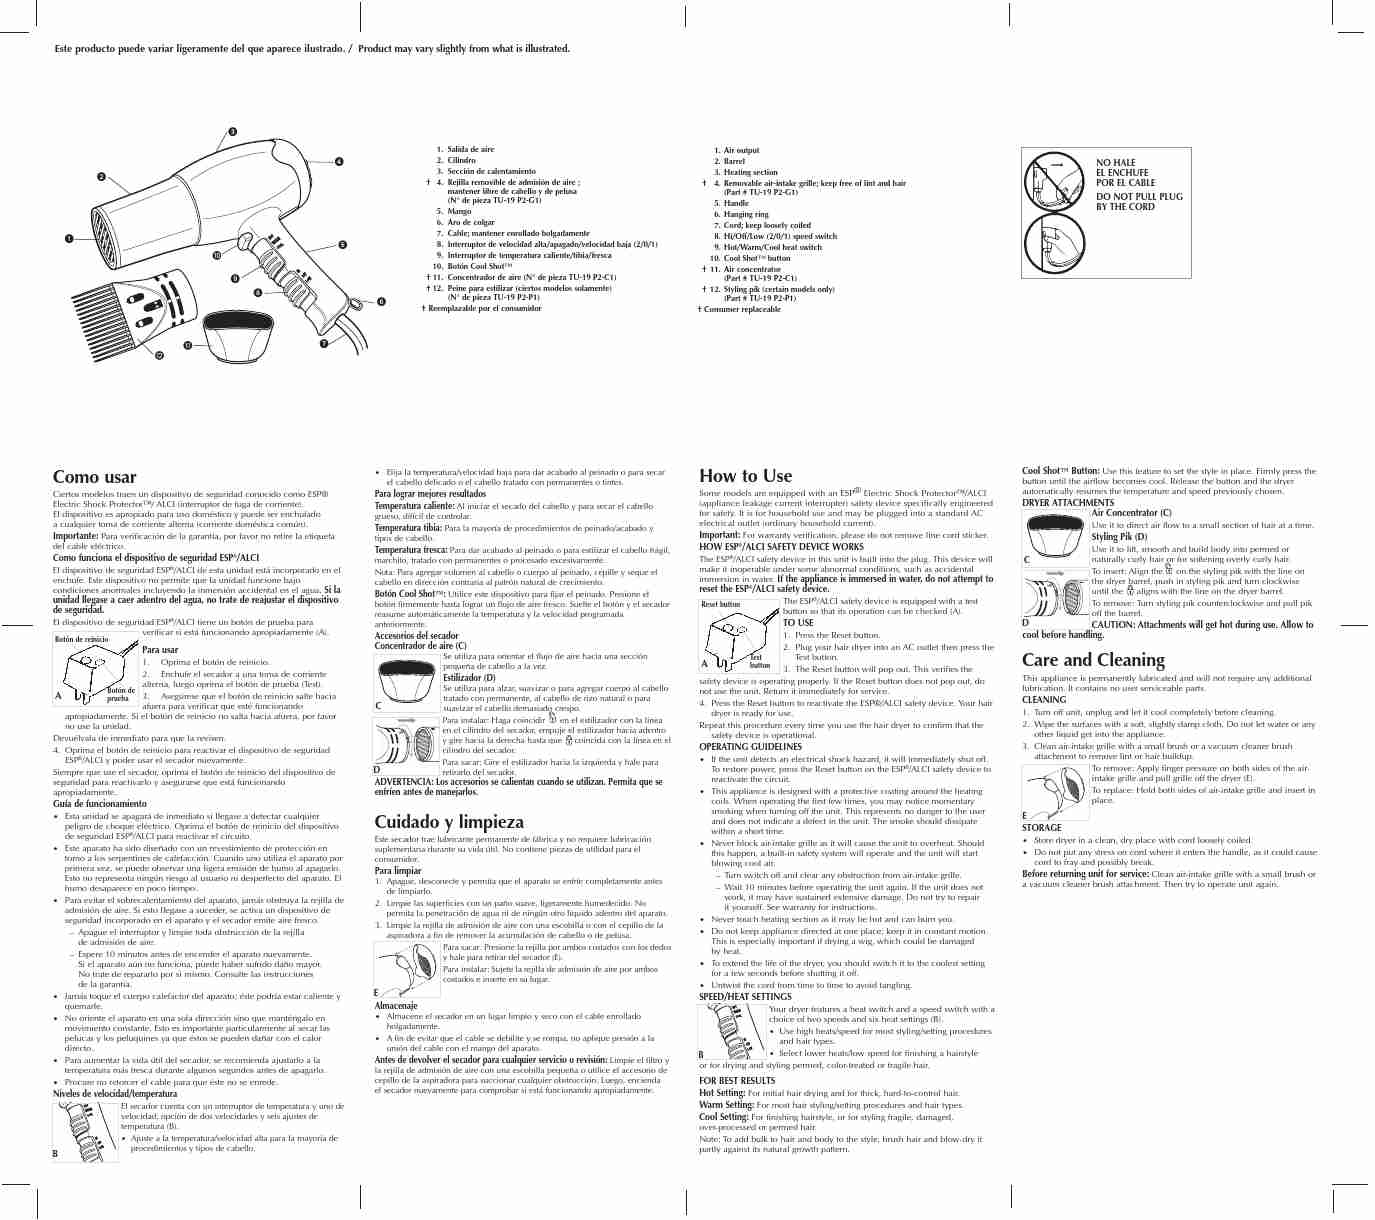 BLACK & DECKER HD500-page_pdf